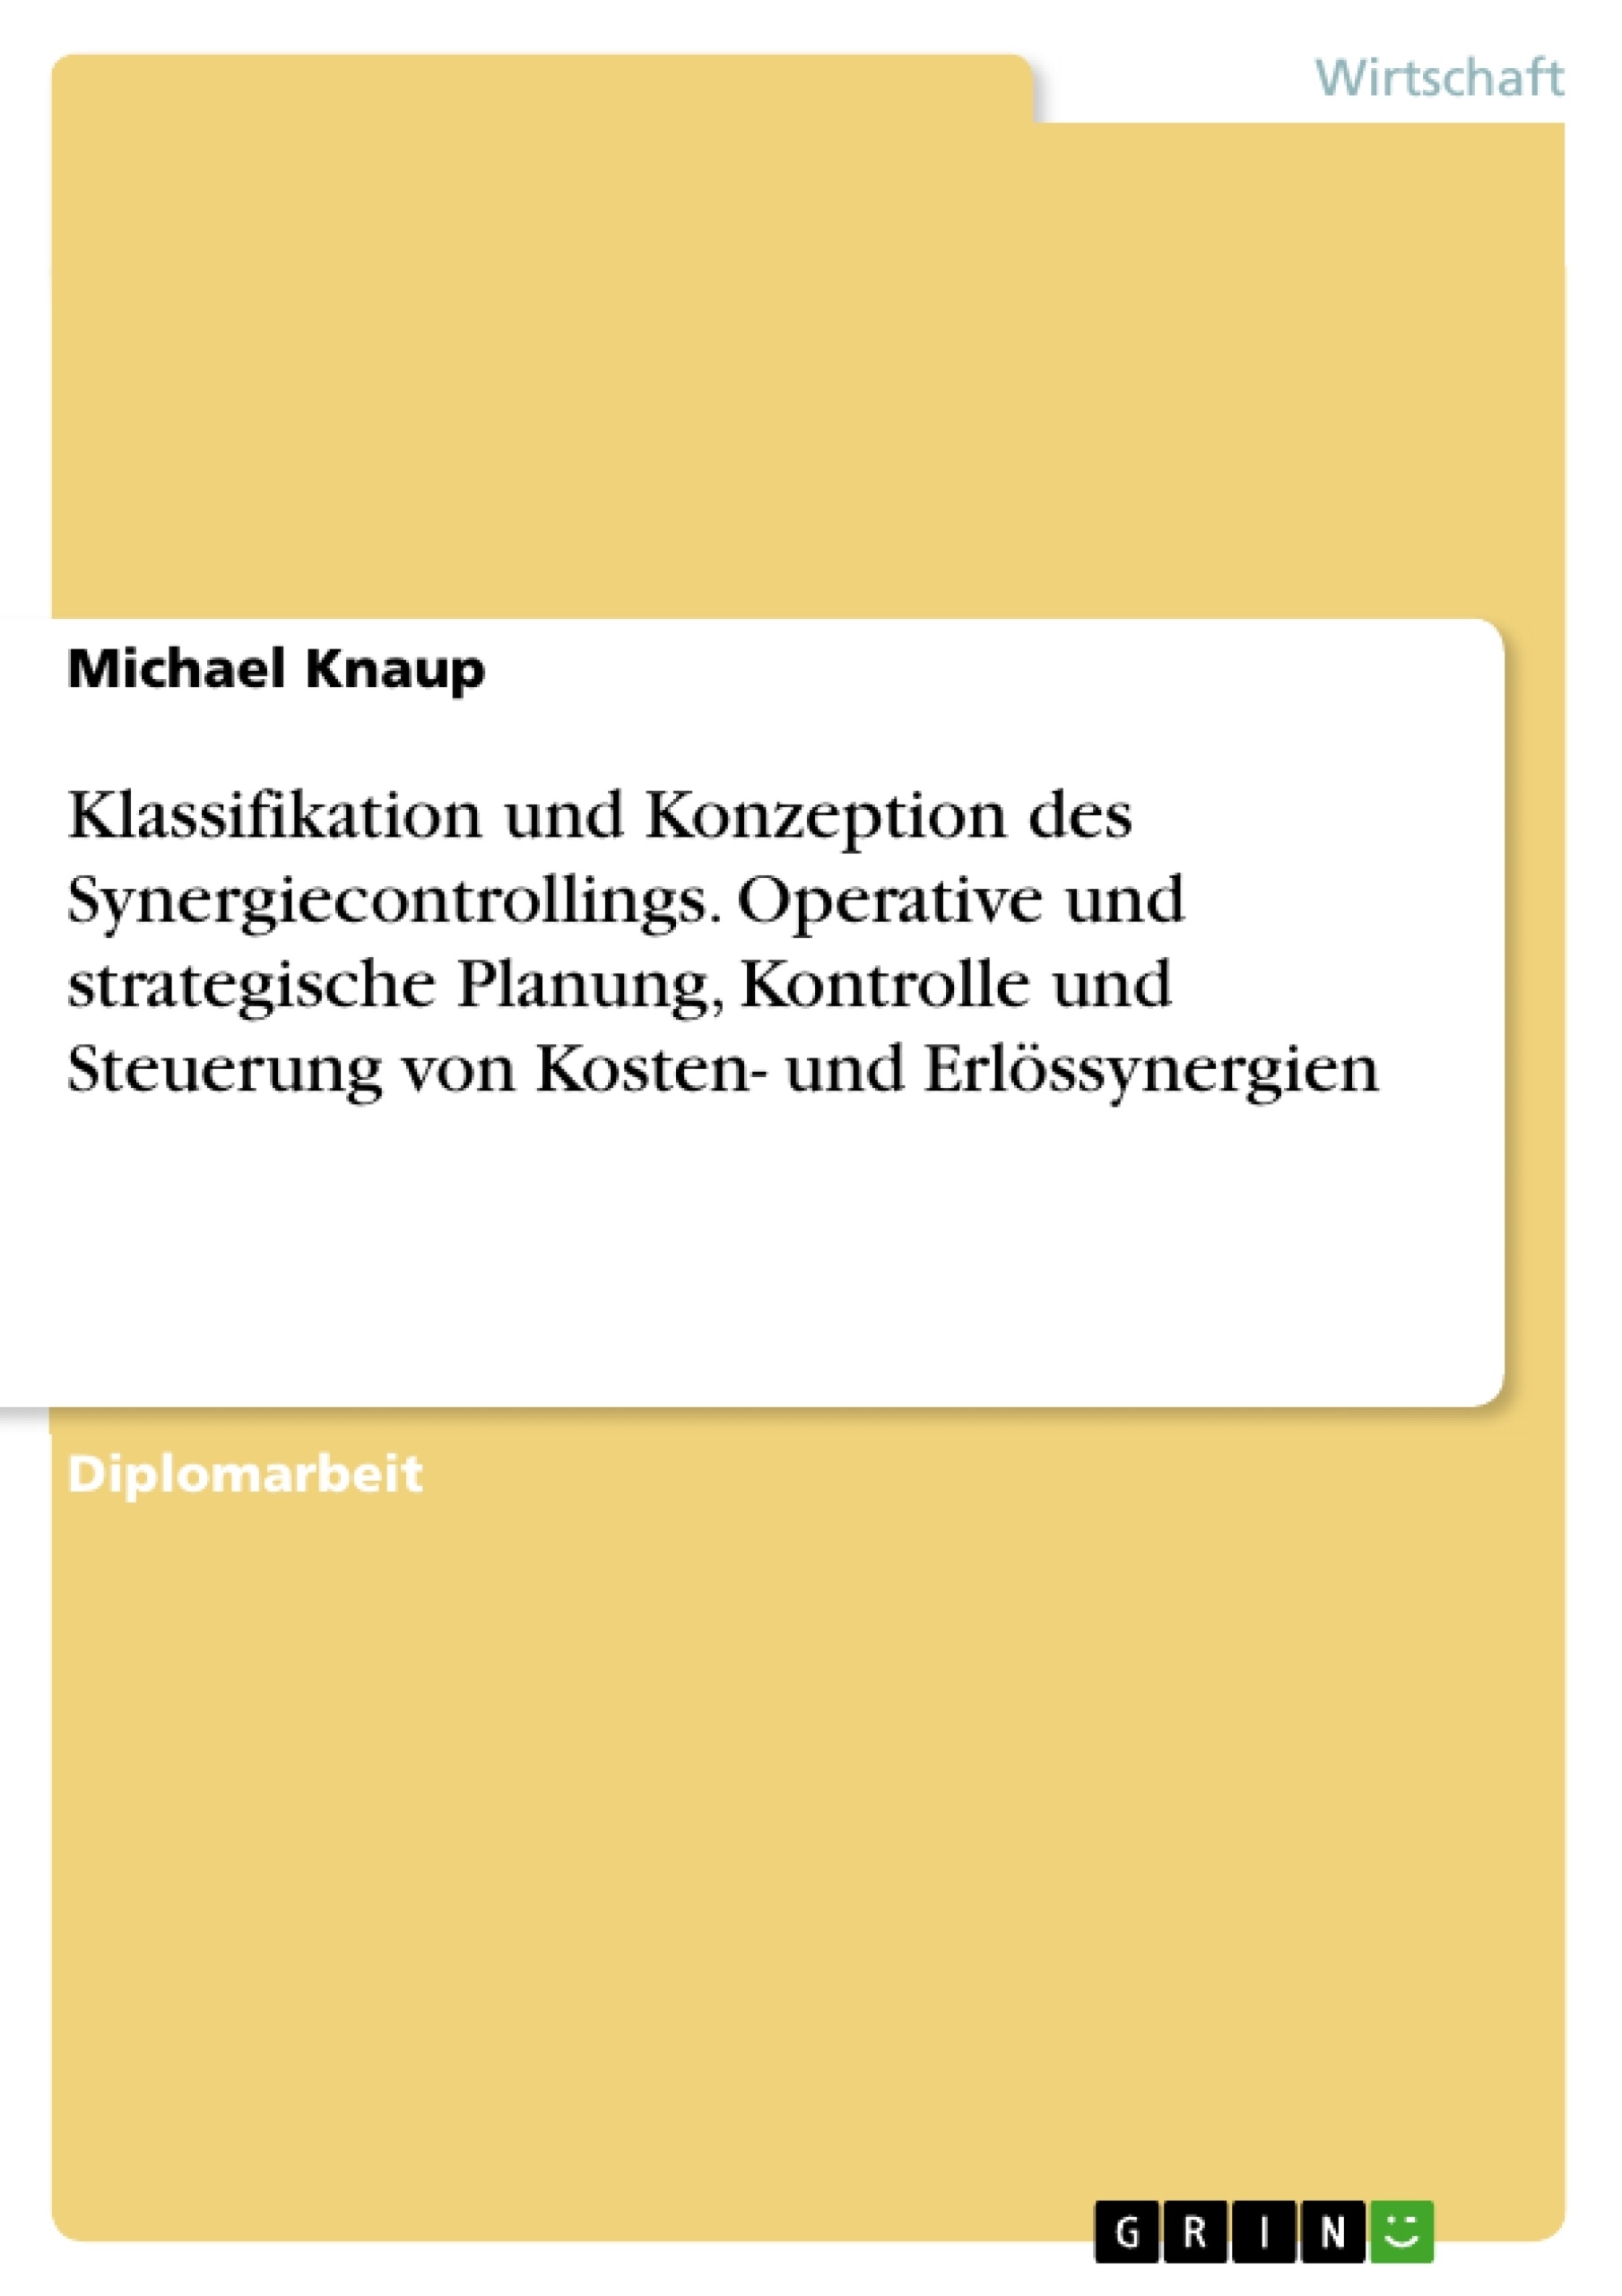 Title: Klassifikation und Konzeption des Synergiecontrollings. Operative und strategische Planung, Kontrolle und Steuerung von Kosten- und Erlössynergien